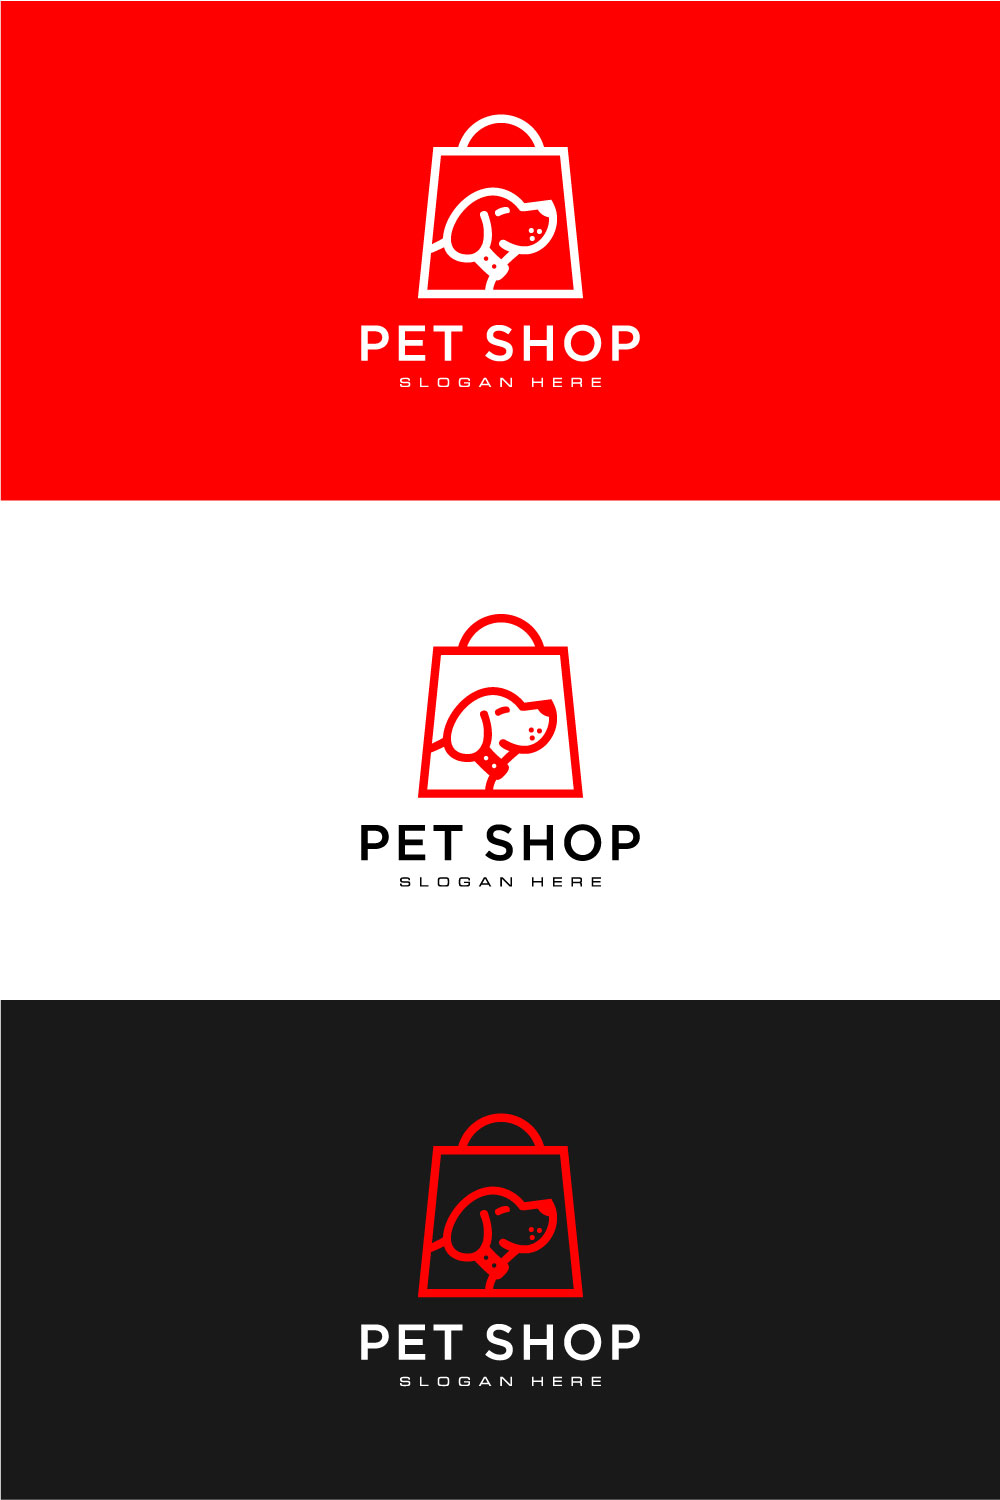 Dog Shop Logo Vector Design Pinterest Image.